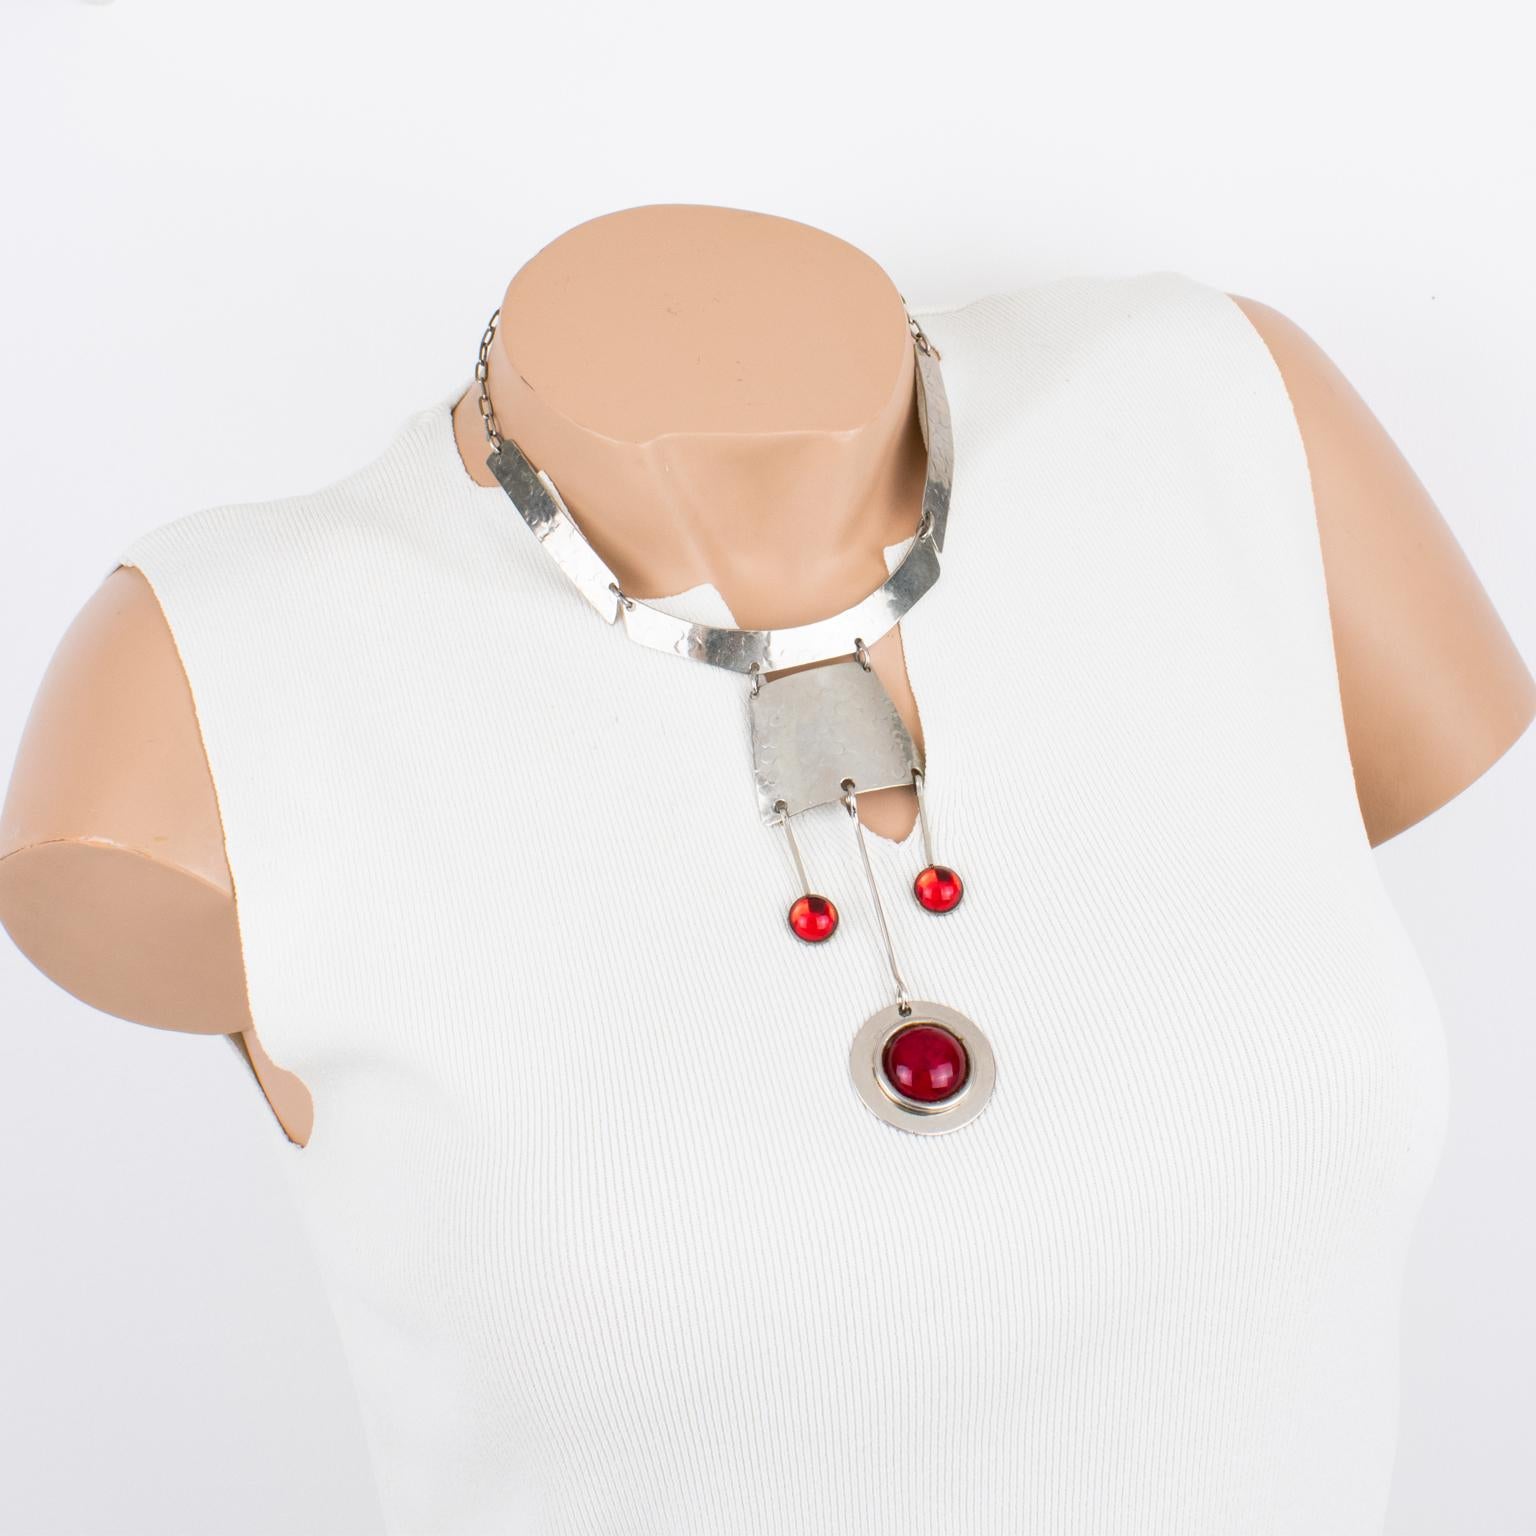 Diese atemberaubende modernistische Space-Age-Halskette wurde in den 1970er Jahren in Frankreich hergestellt. Das Halsband besteht aus gehämmerten geometrischen Elementen aus Edelstahl, die mit baumelnden Charme-Anhängern verziert sind. Die